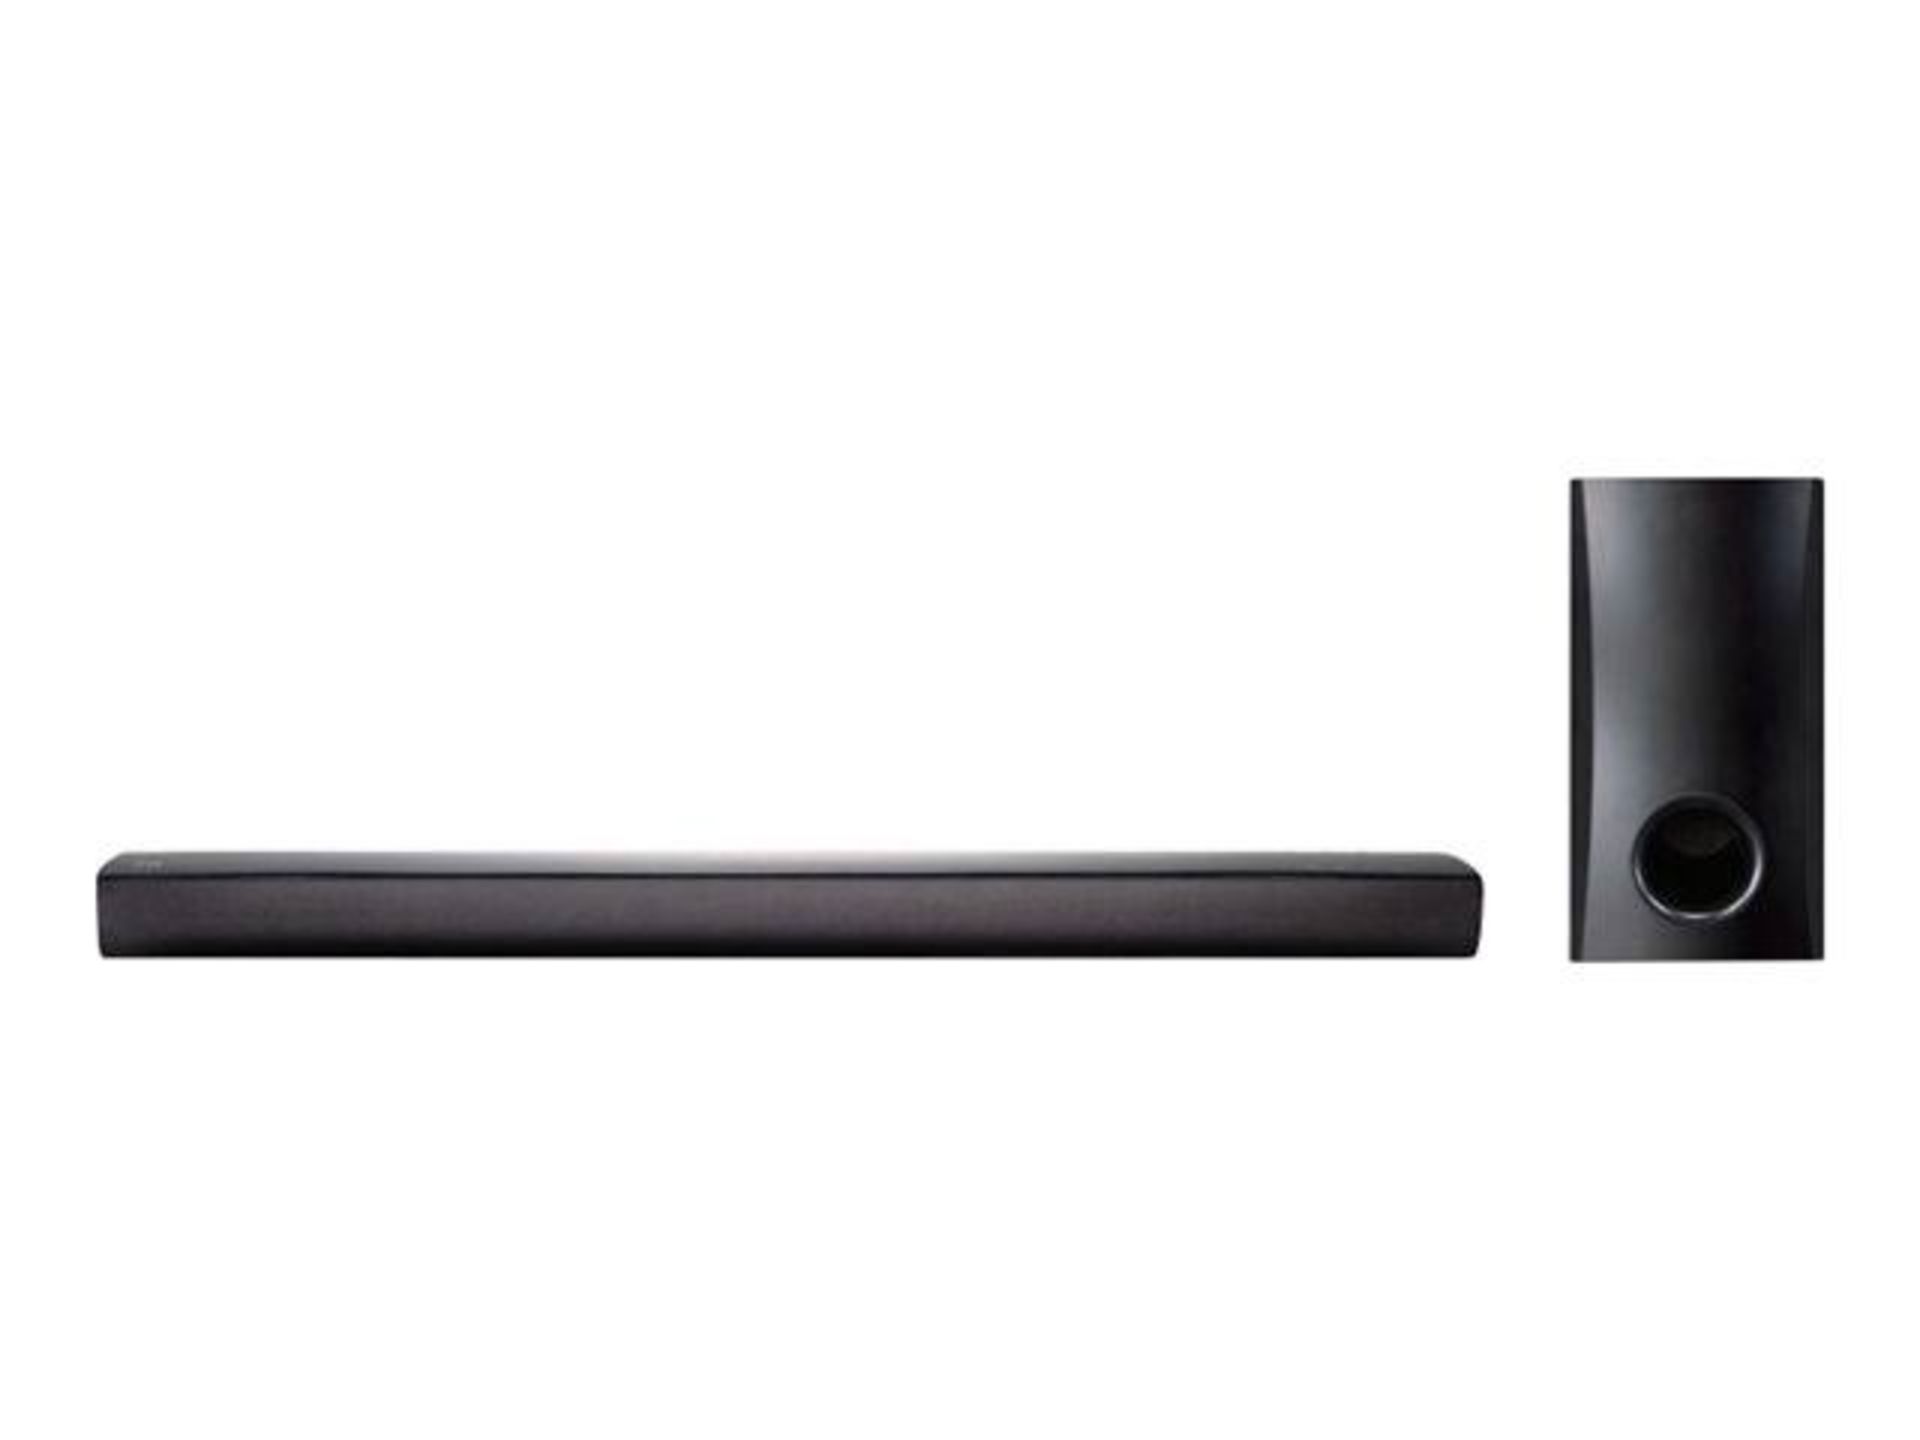 V Grade A NB2540 LG 120W Home Cinema Soundbar System 2.1 With Sub - Image 10 of 10